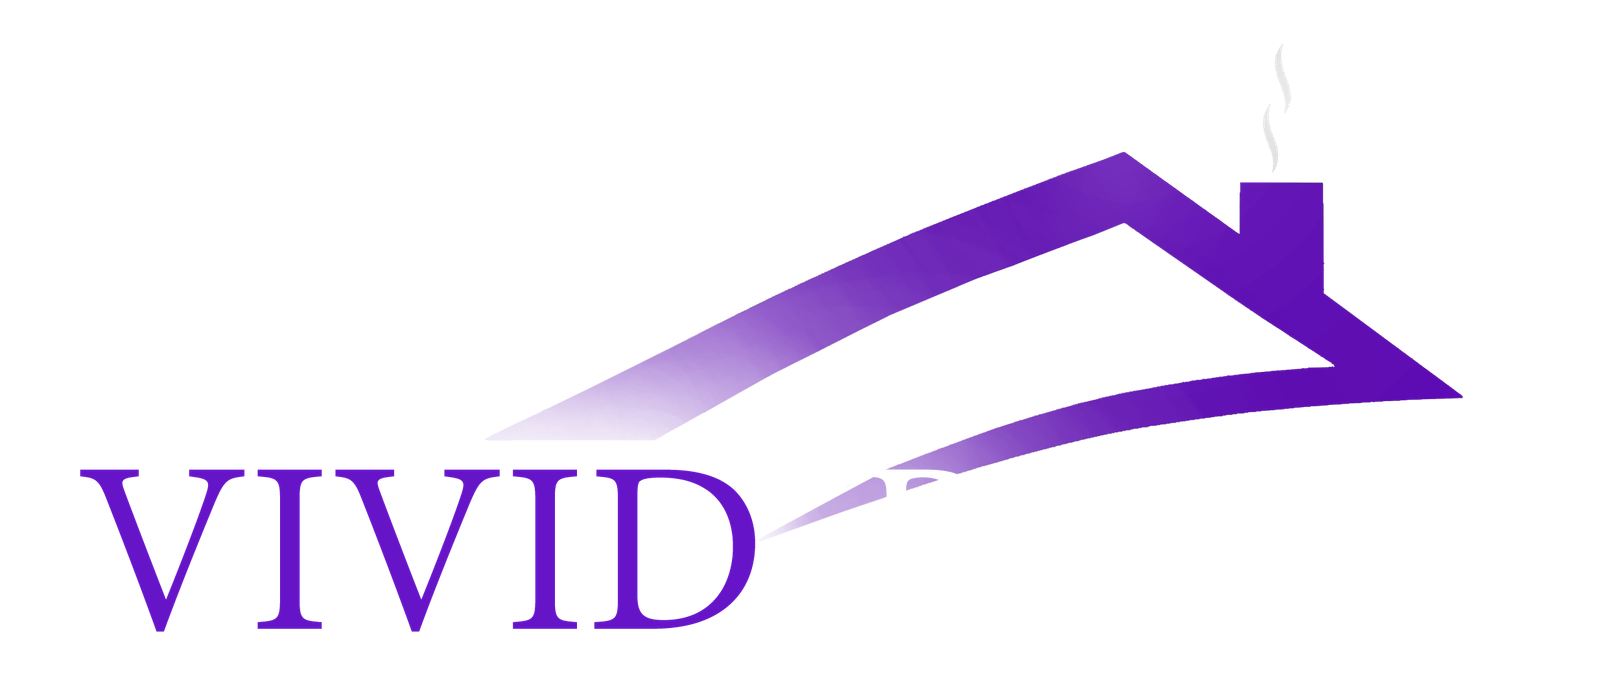 Vivid Peak